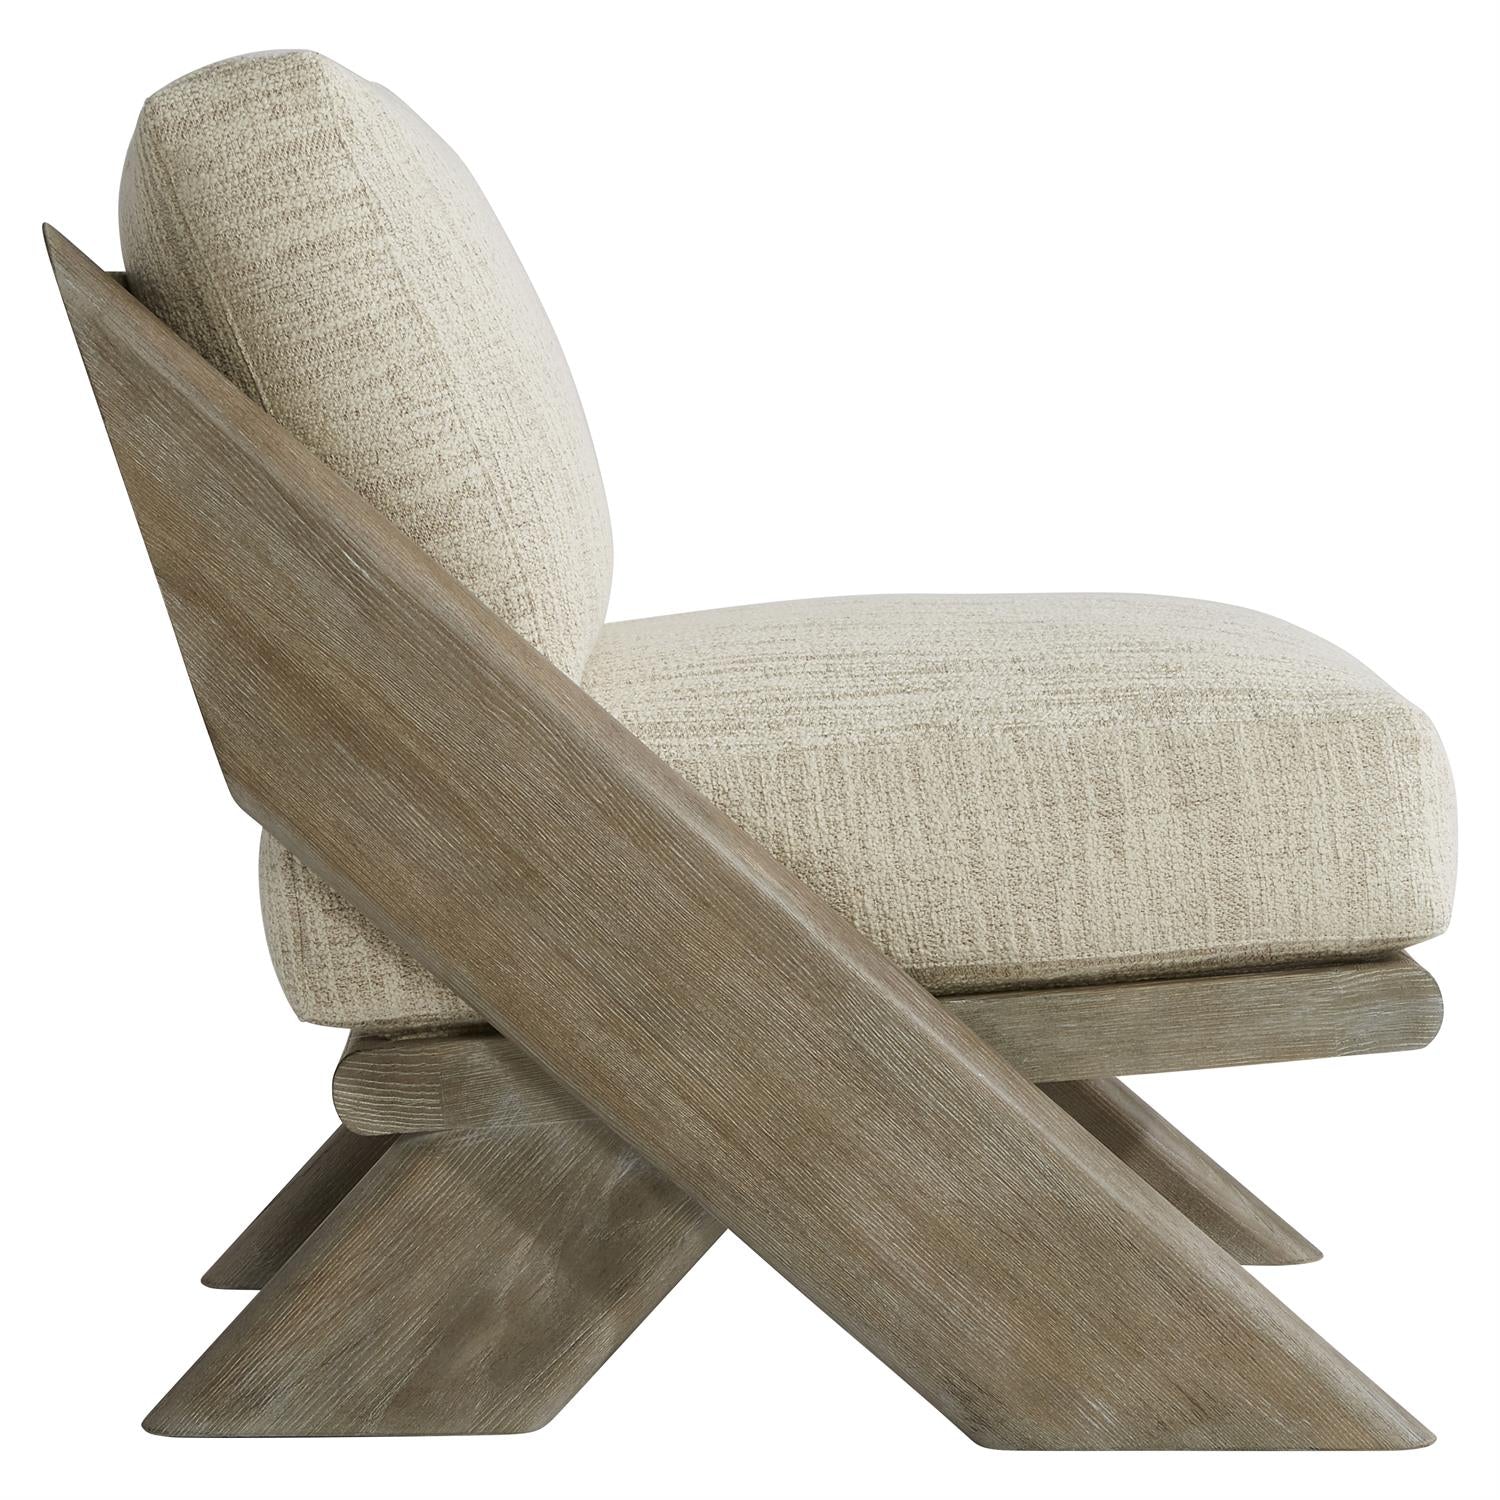 Bernhardt, Aix Fabric Chair